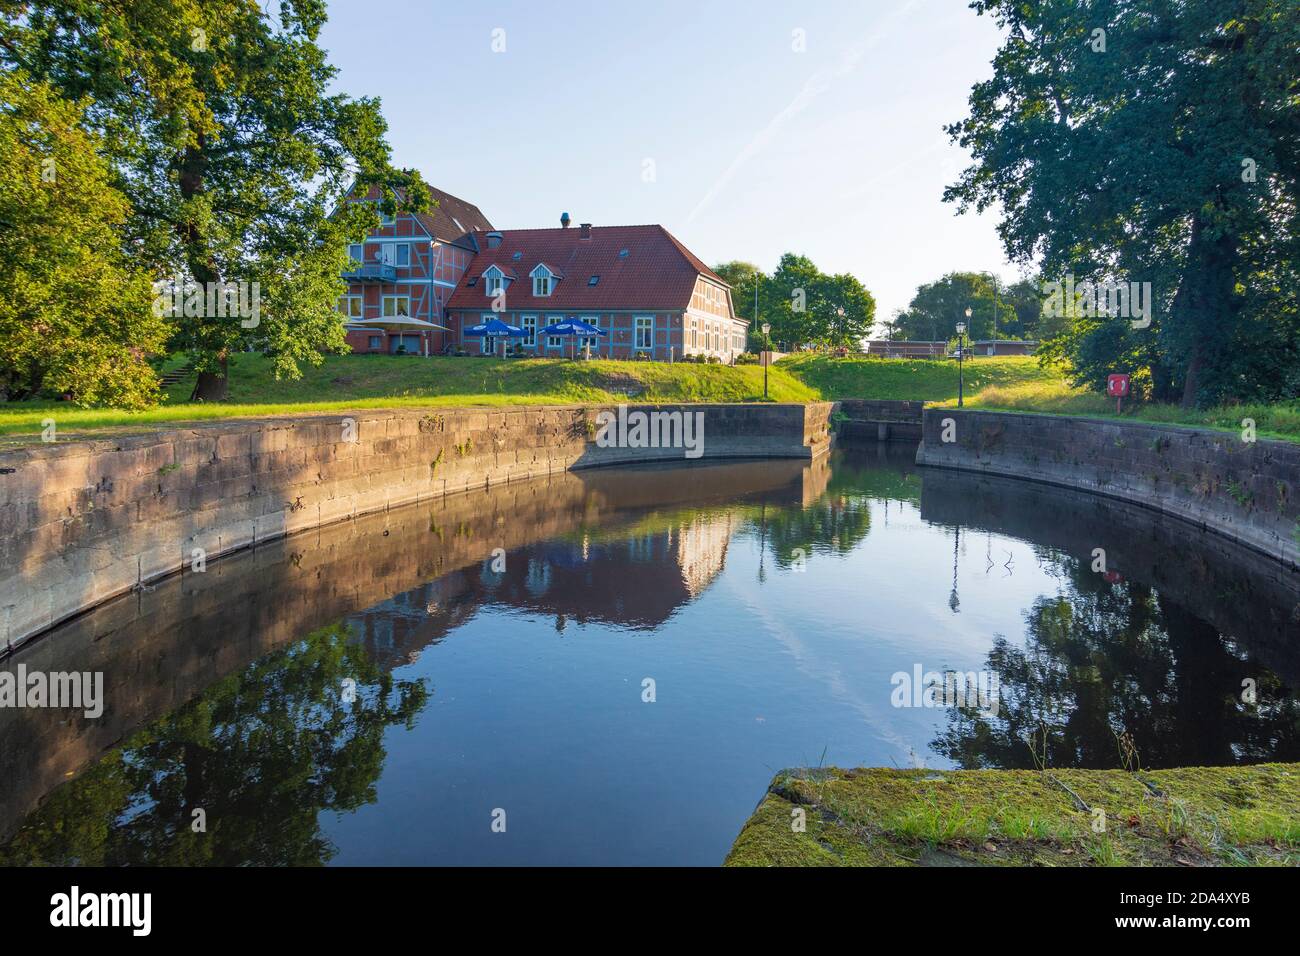 Lauenburg/Elbe: Palmschleuse, chamber lock, at former canal Stecknitzkanal, Herzogtum Lauenburg, Schleswig-Holstein, Germany Stock Photo